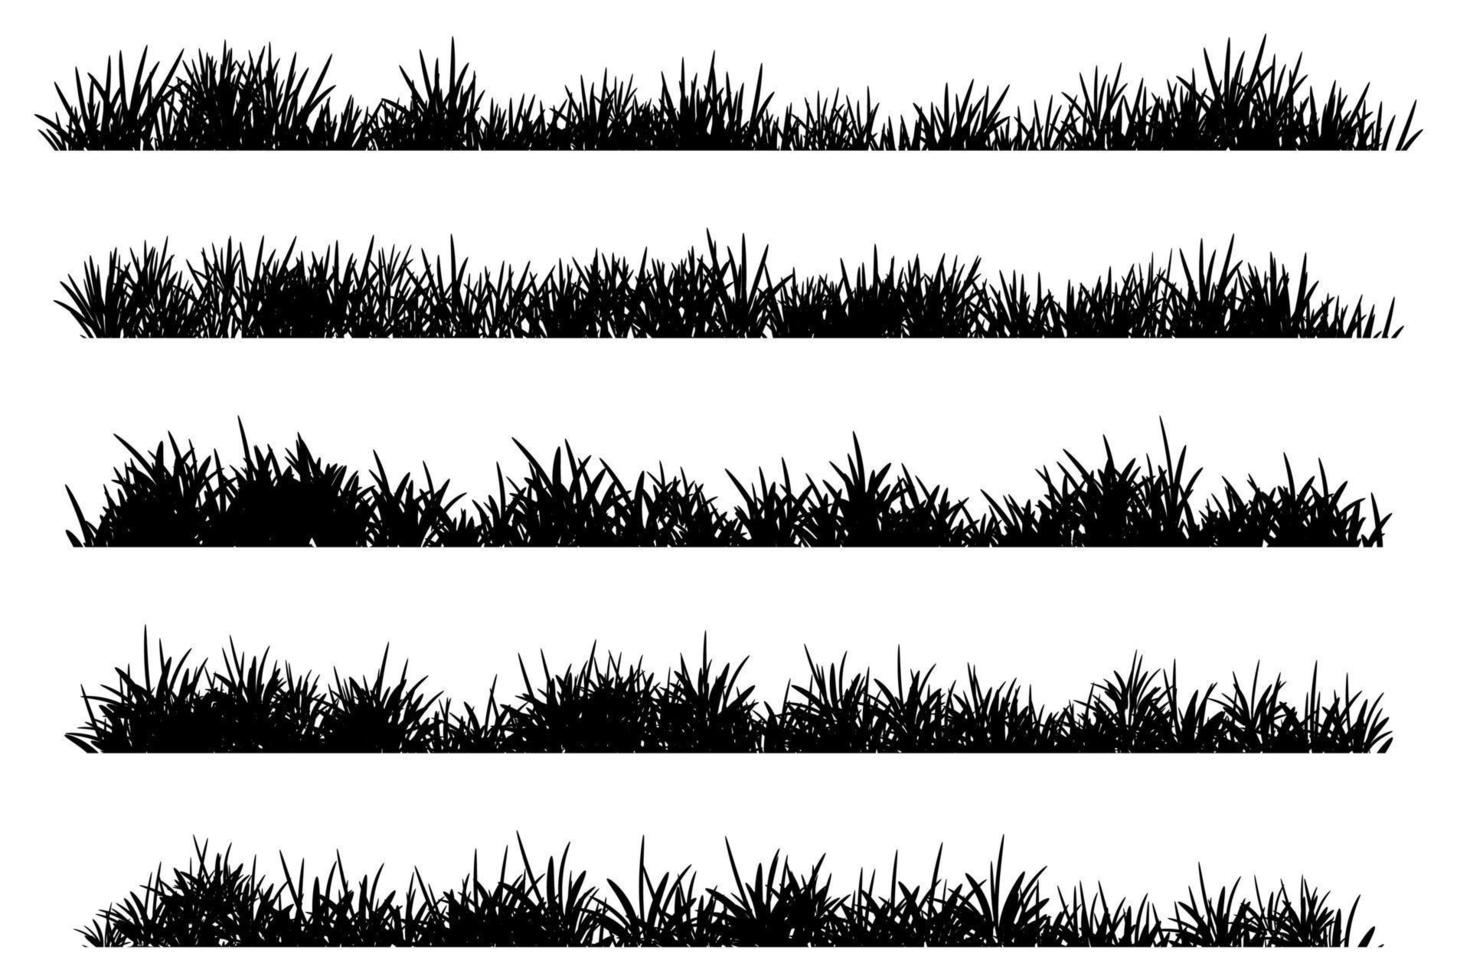 silueta de hierba simple vector